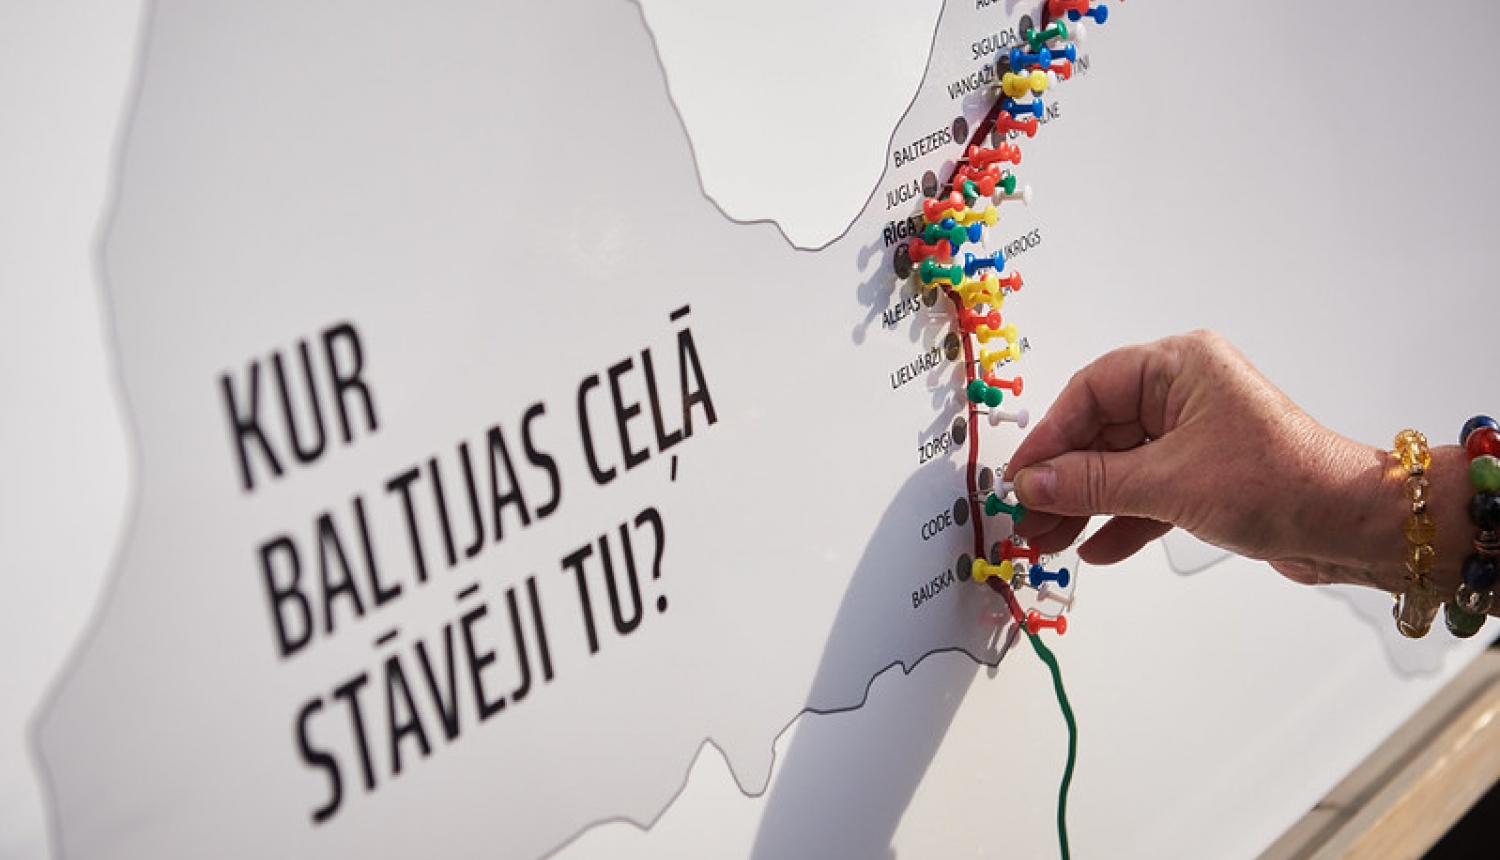 Foto: Latvijas kartes kontūra un atzīmes, kur stāvēja Baltijas ceļa dalībnieki